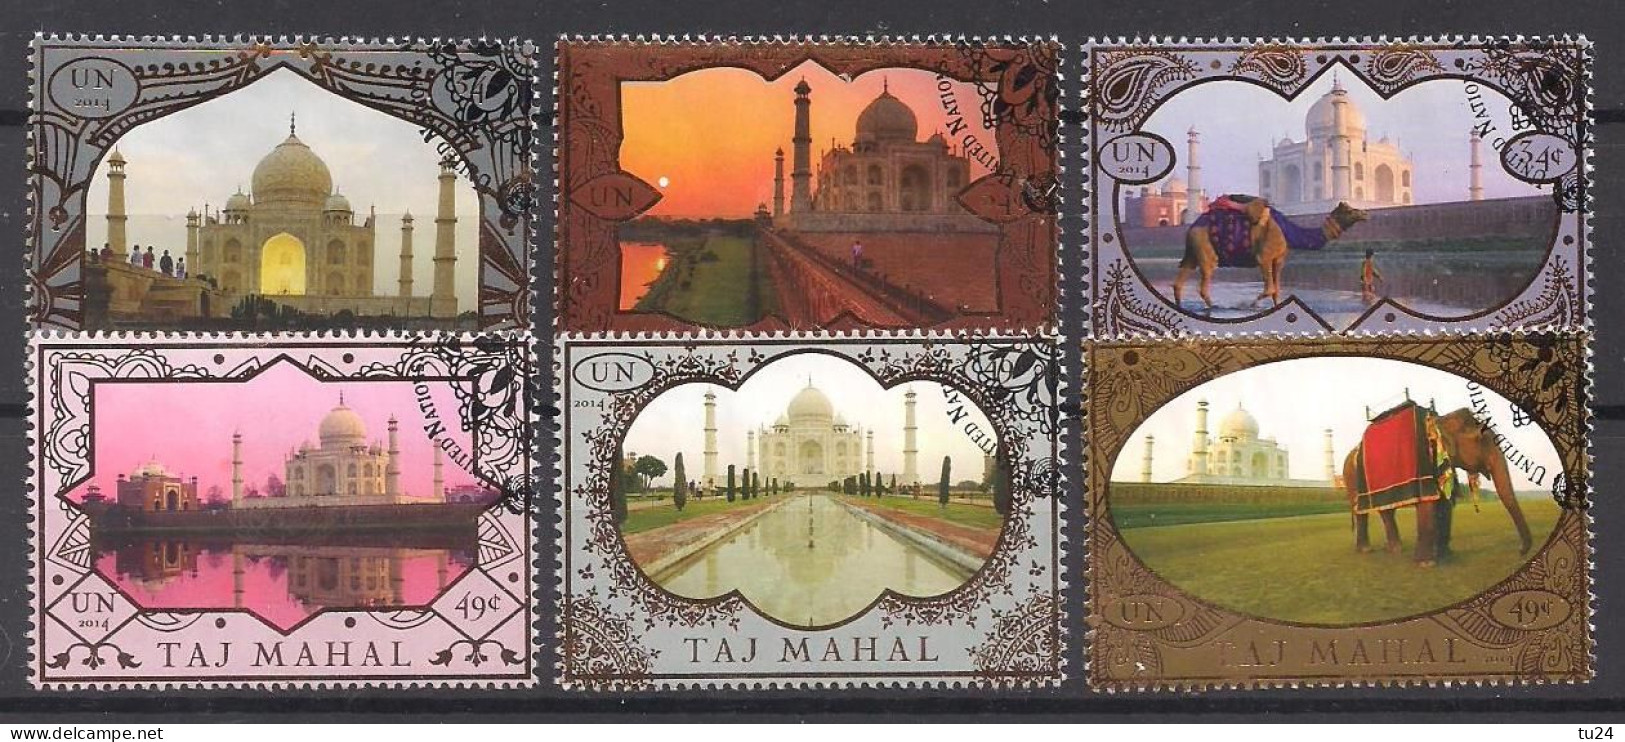 UNO  New York  (2014)  Mi.Nr.  1420 - 1425  Gest. / Used  (9hf06) Taj Mahal - Used Stamps